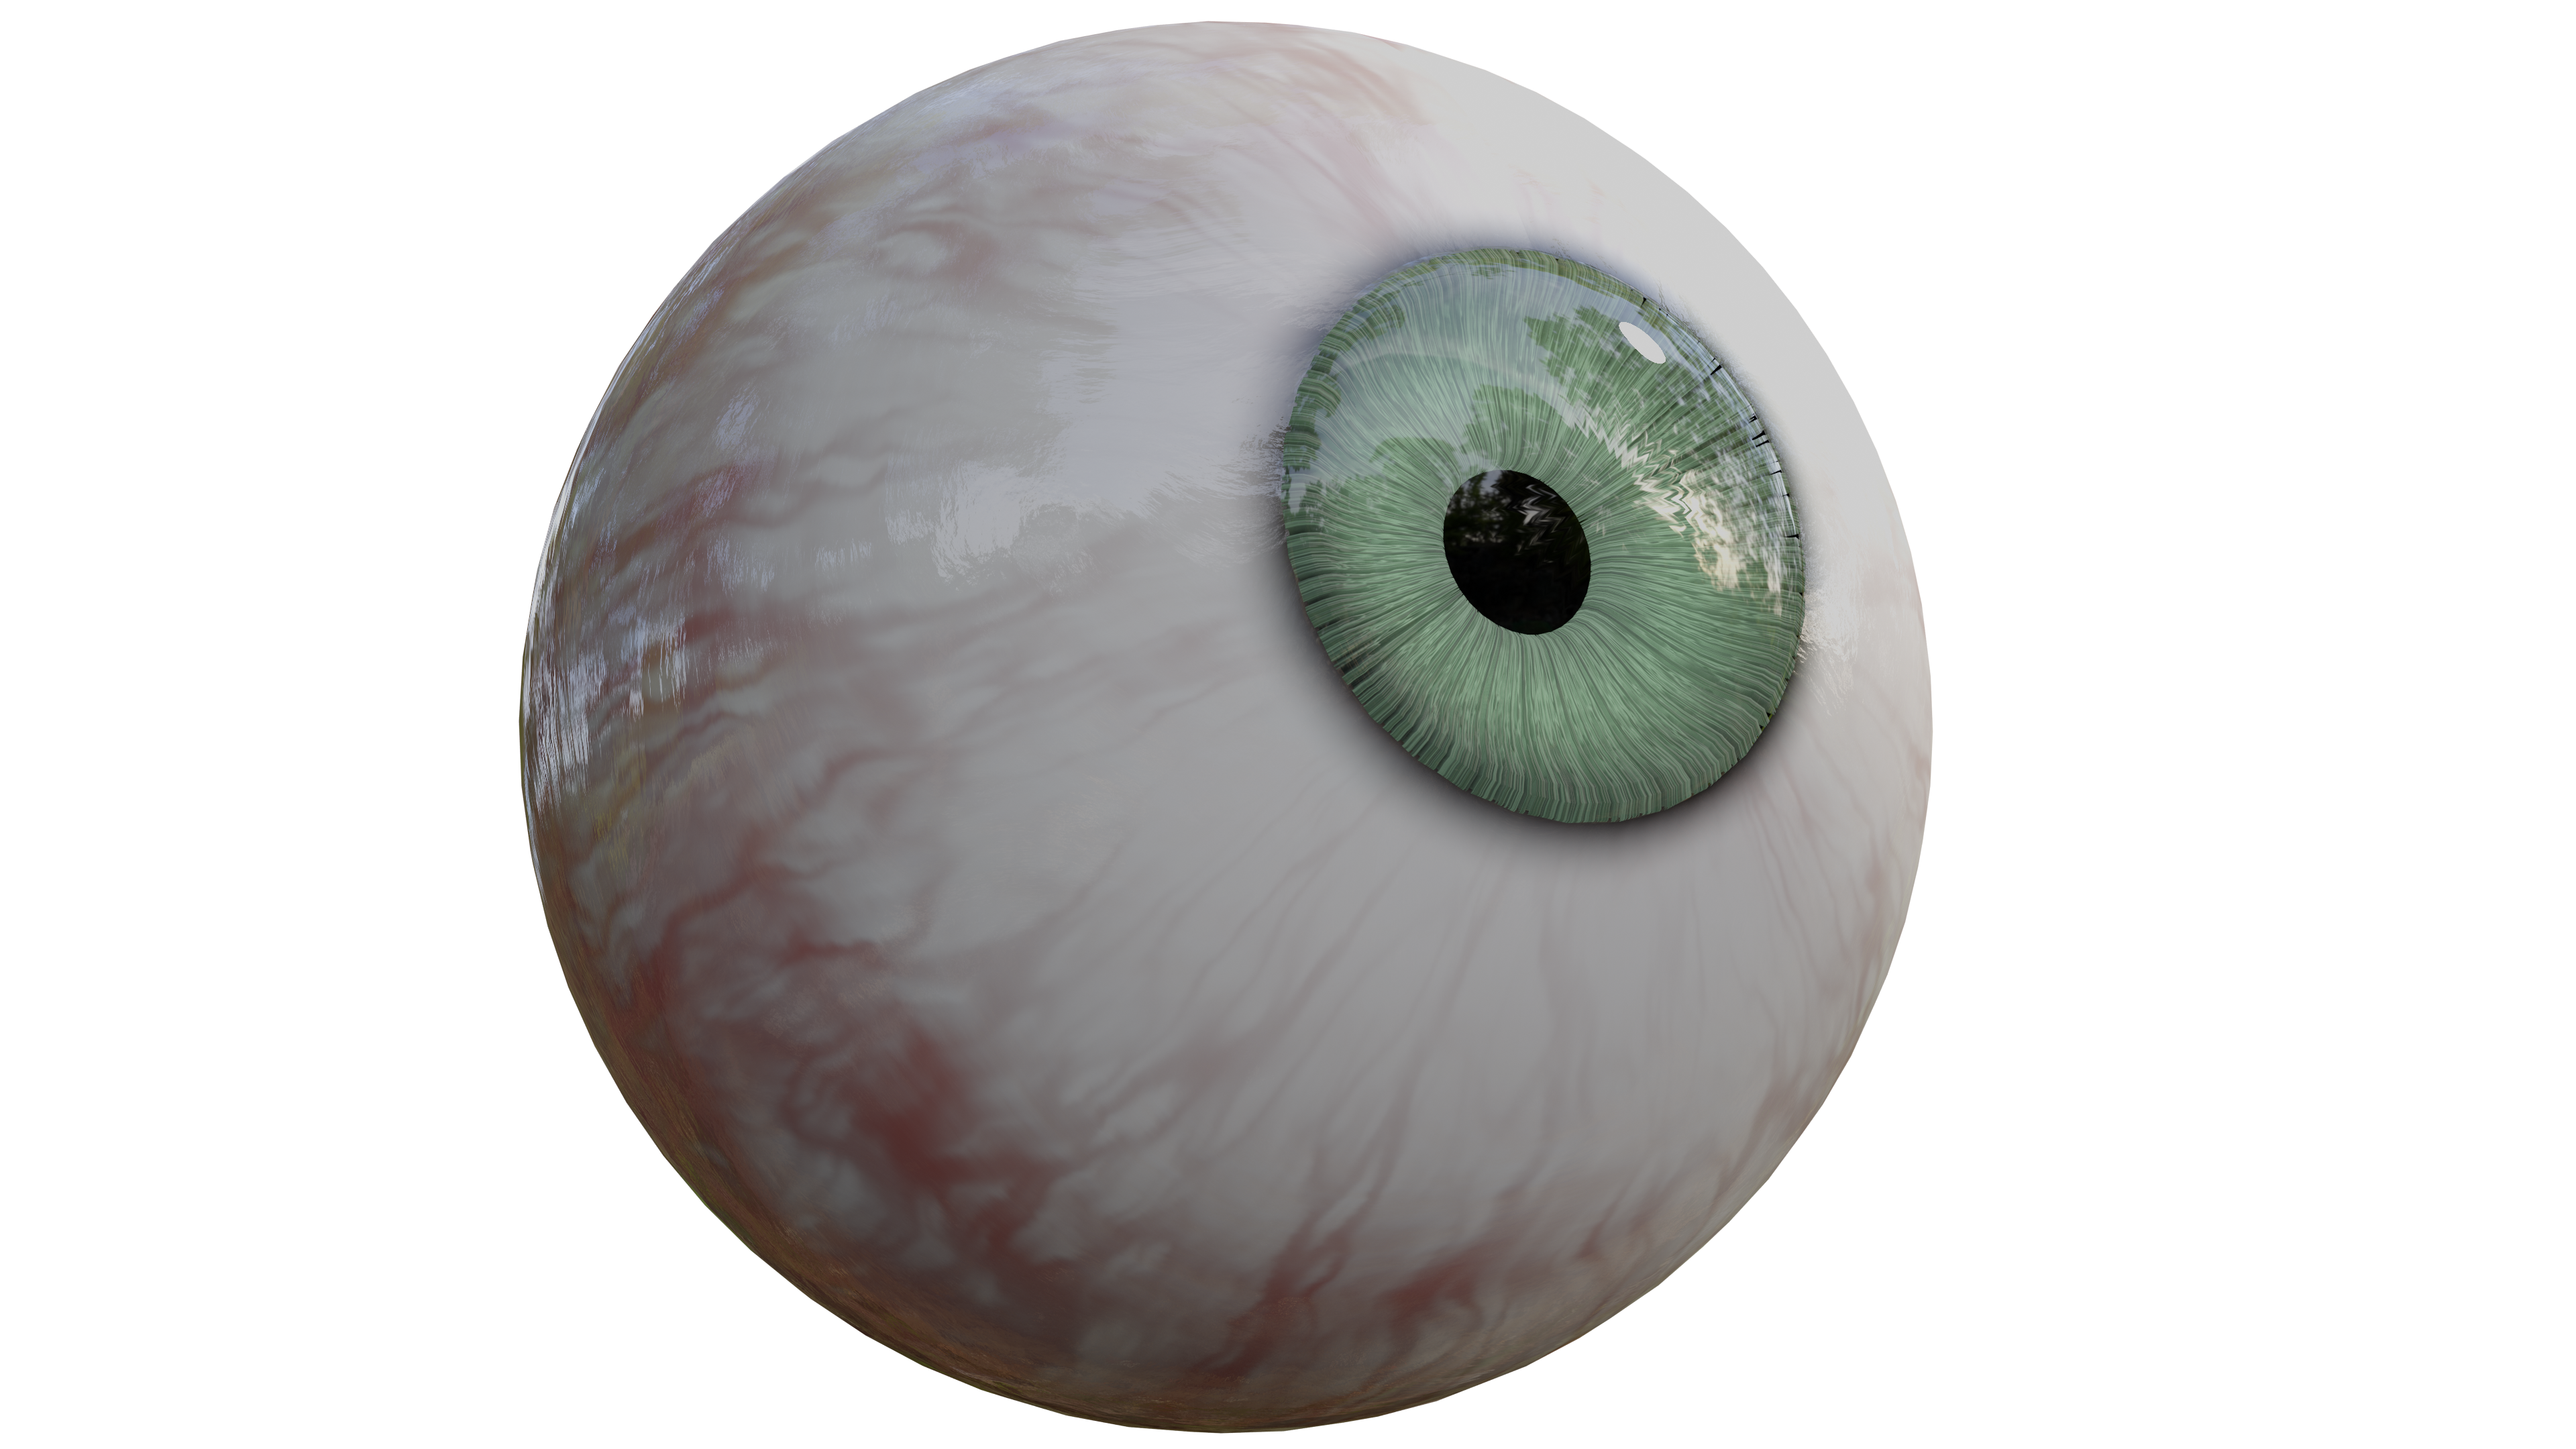 3D rendering of an eye ball